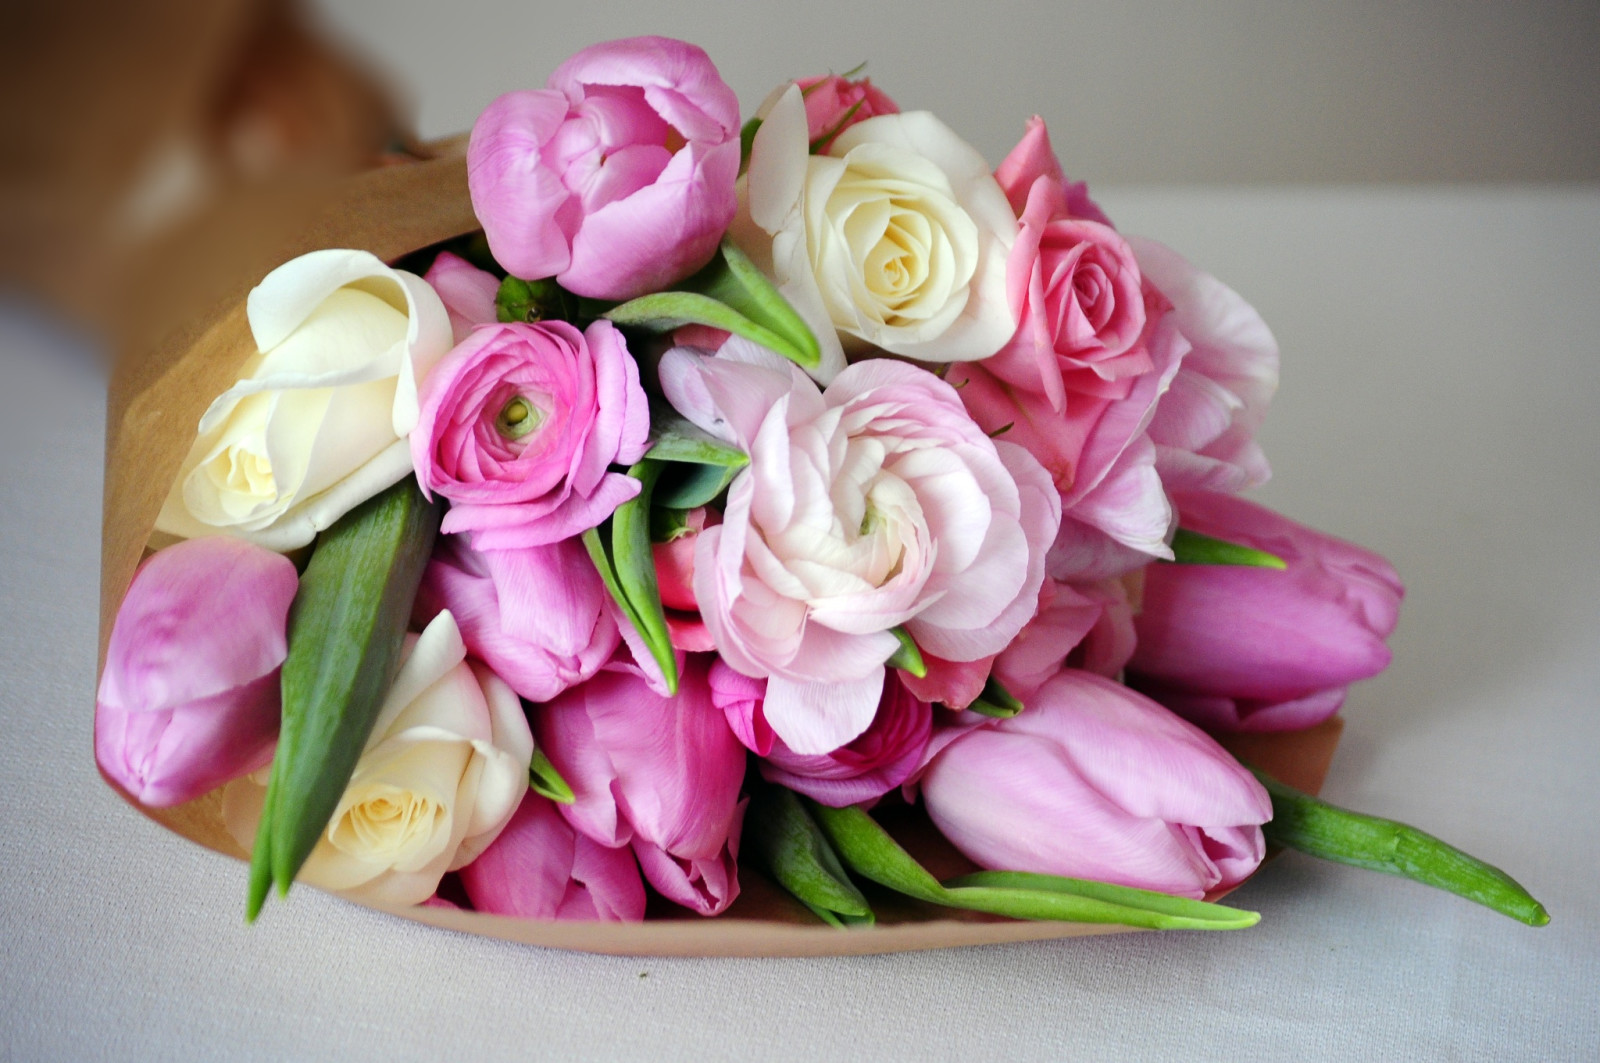 สีชมพู, ดอกโบตั๋น, ช่อดอกไม้, ดอกทิวลิป, บัตเตอร์